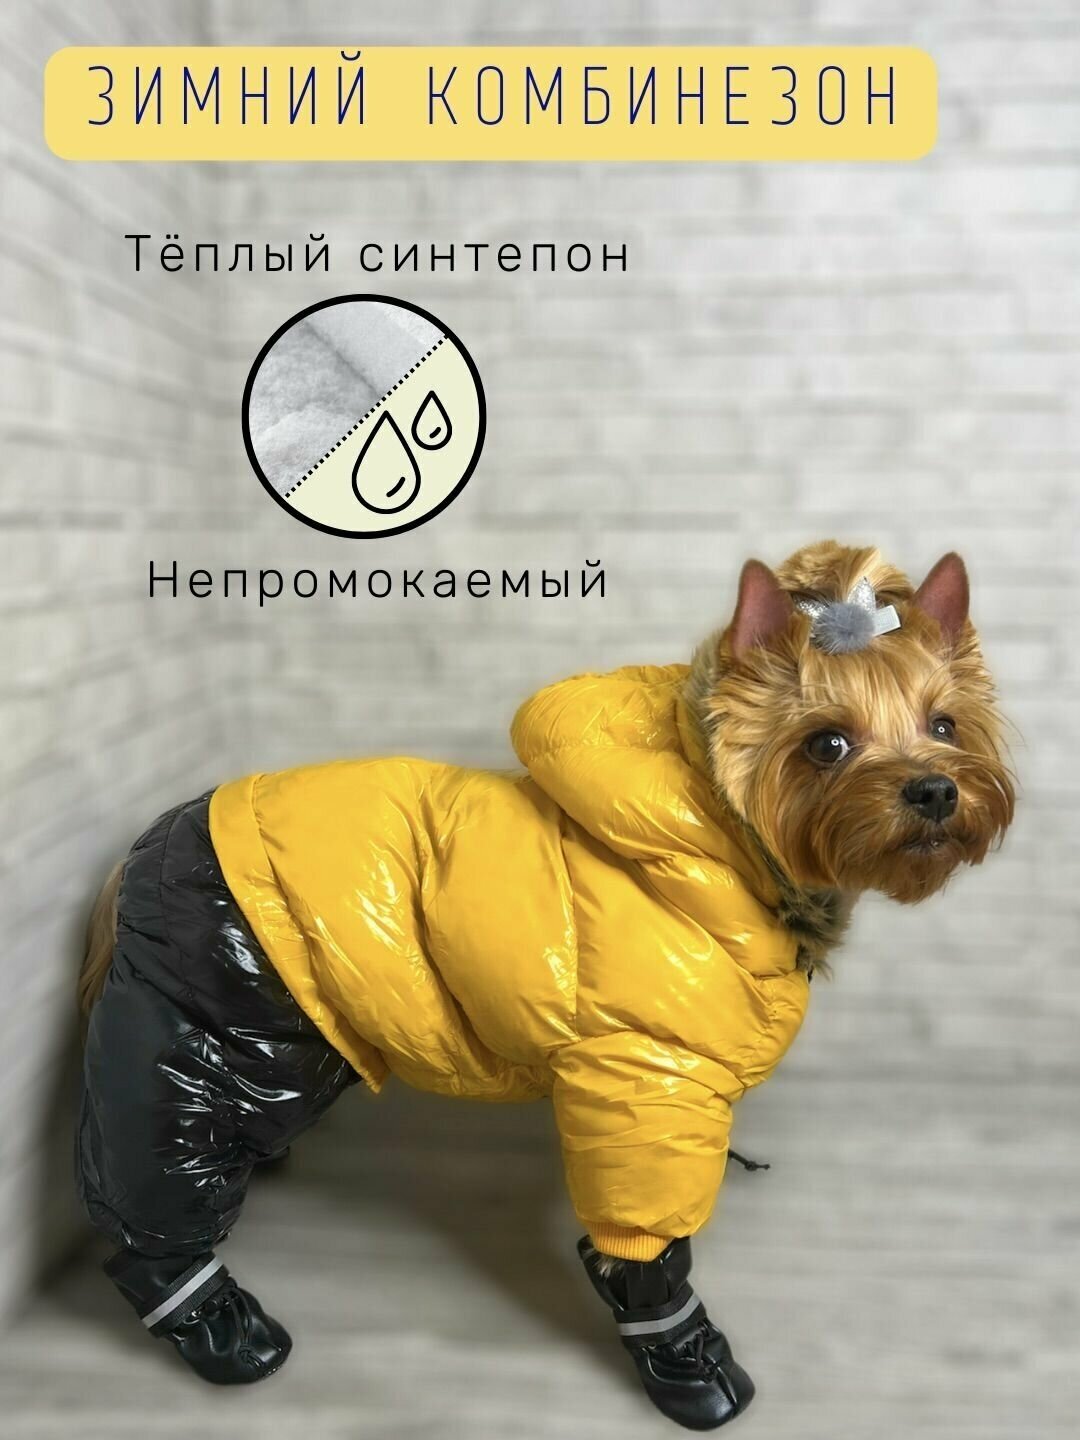 Зимний комбинезон для собак всех пород / Непромокаемый / Плотный синтепон / Размер 16 / Жёлтый